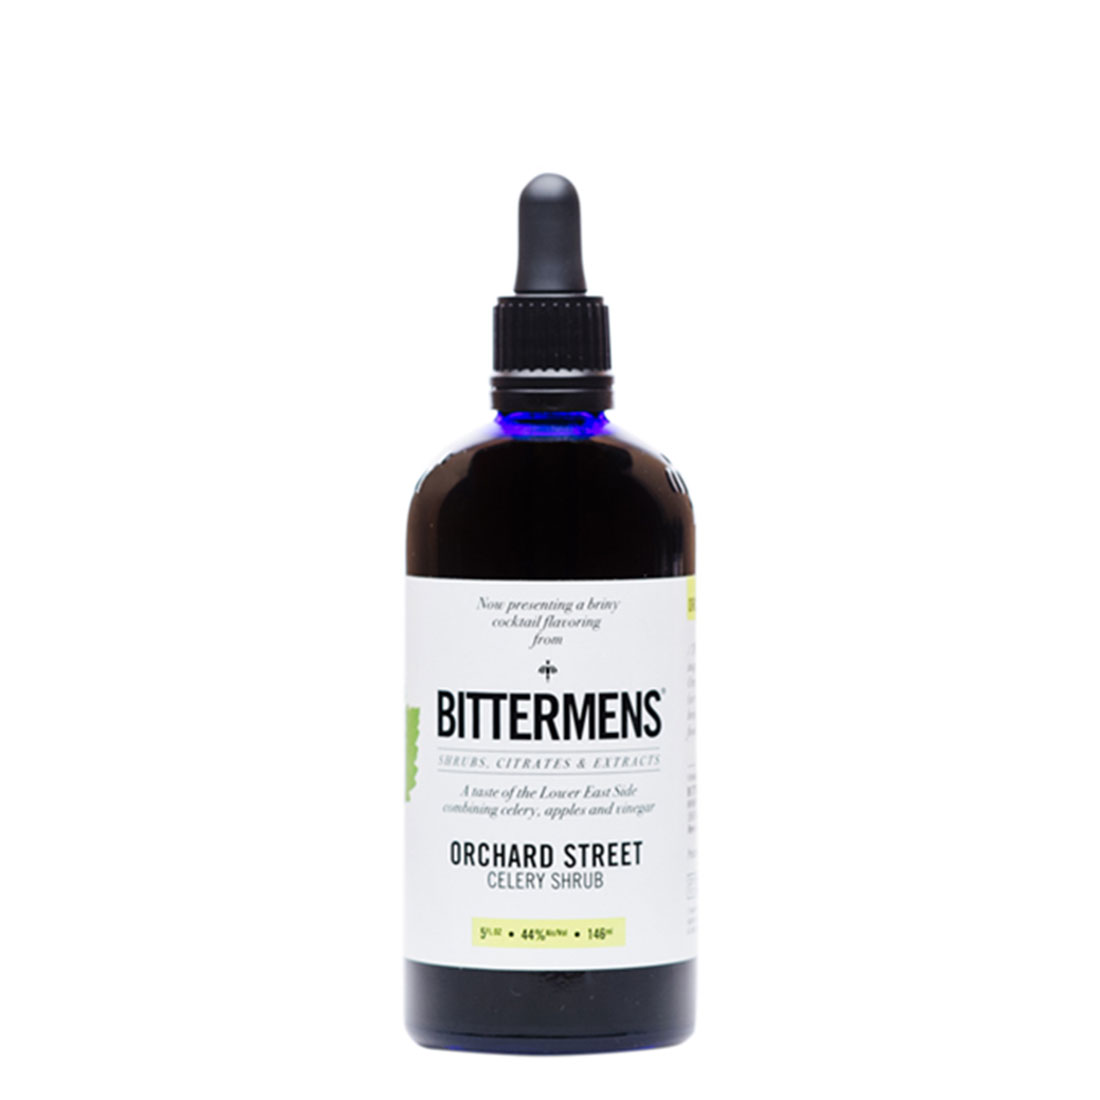 LB_Bottle-Bittermens-Orchard-Street-Celery-Shrub